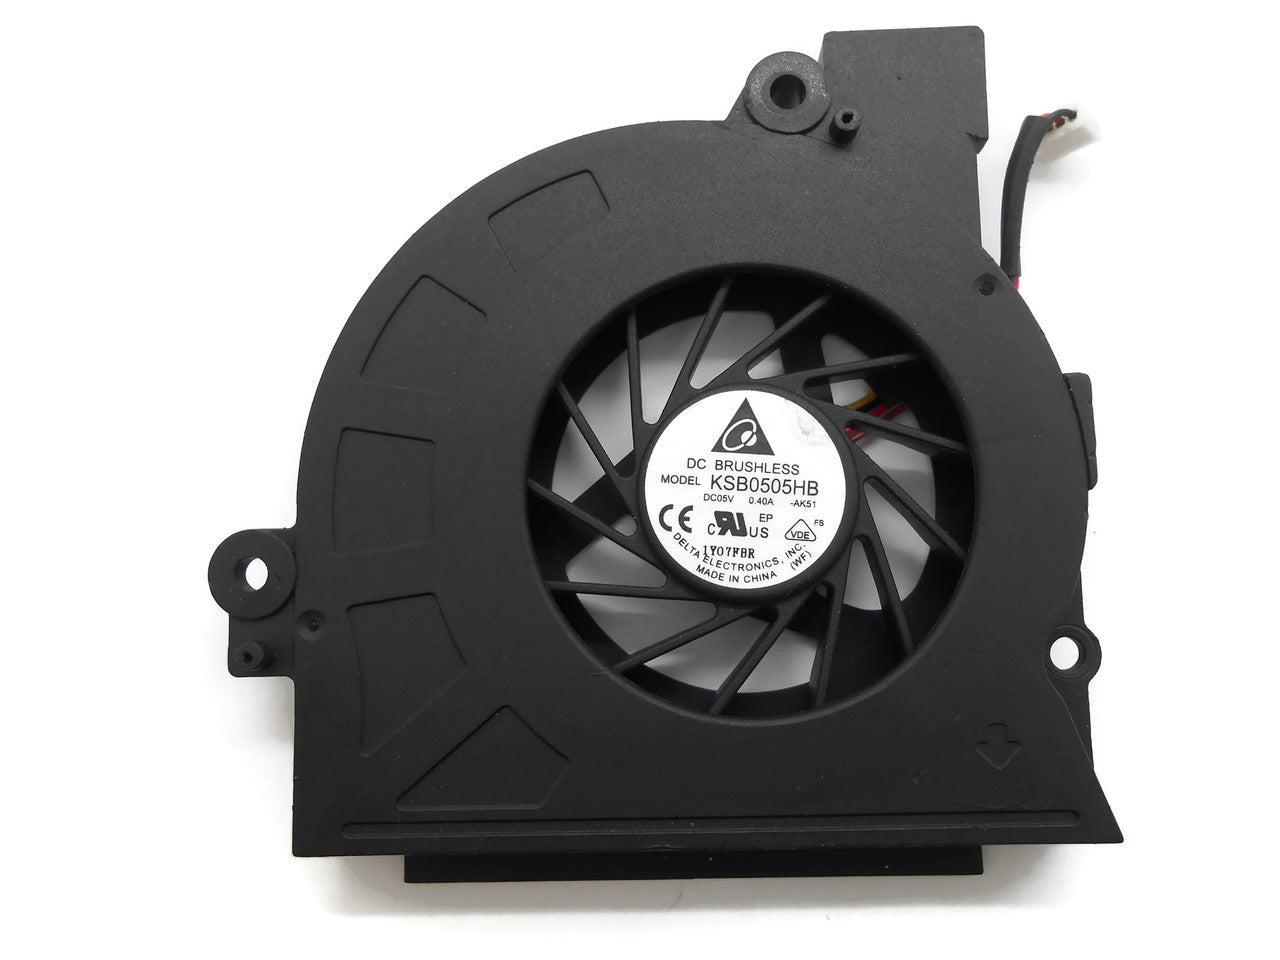 Hovedgade Beskrive frugthave CPU Cooling Fan DC05V 0.40A KSB0505HB 1Y07FBR – notebookparts.com